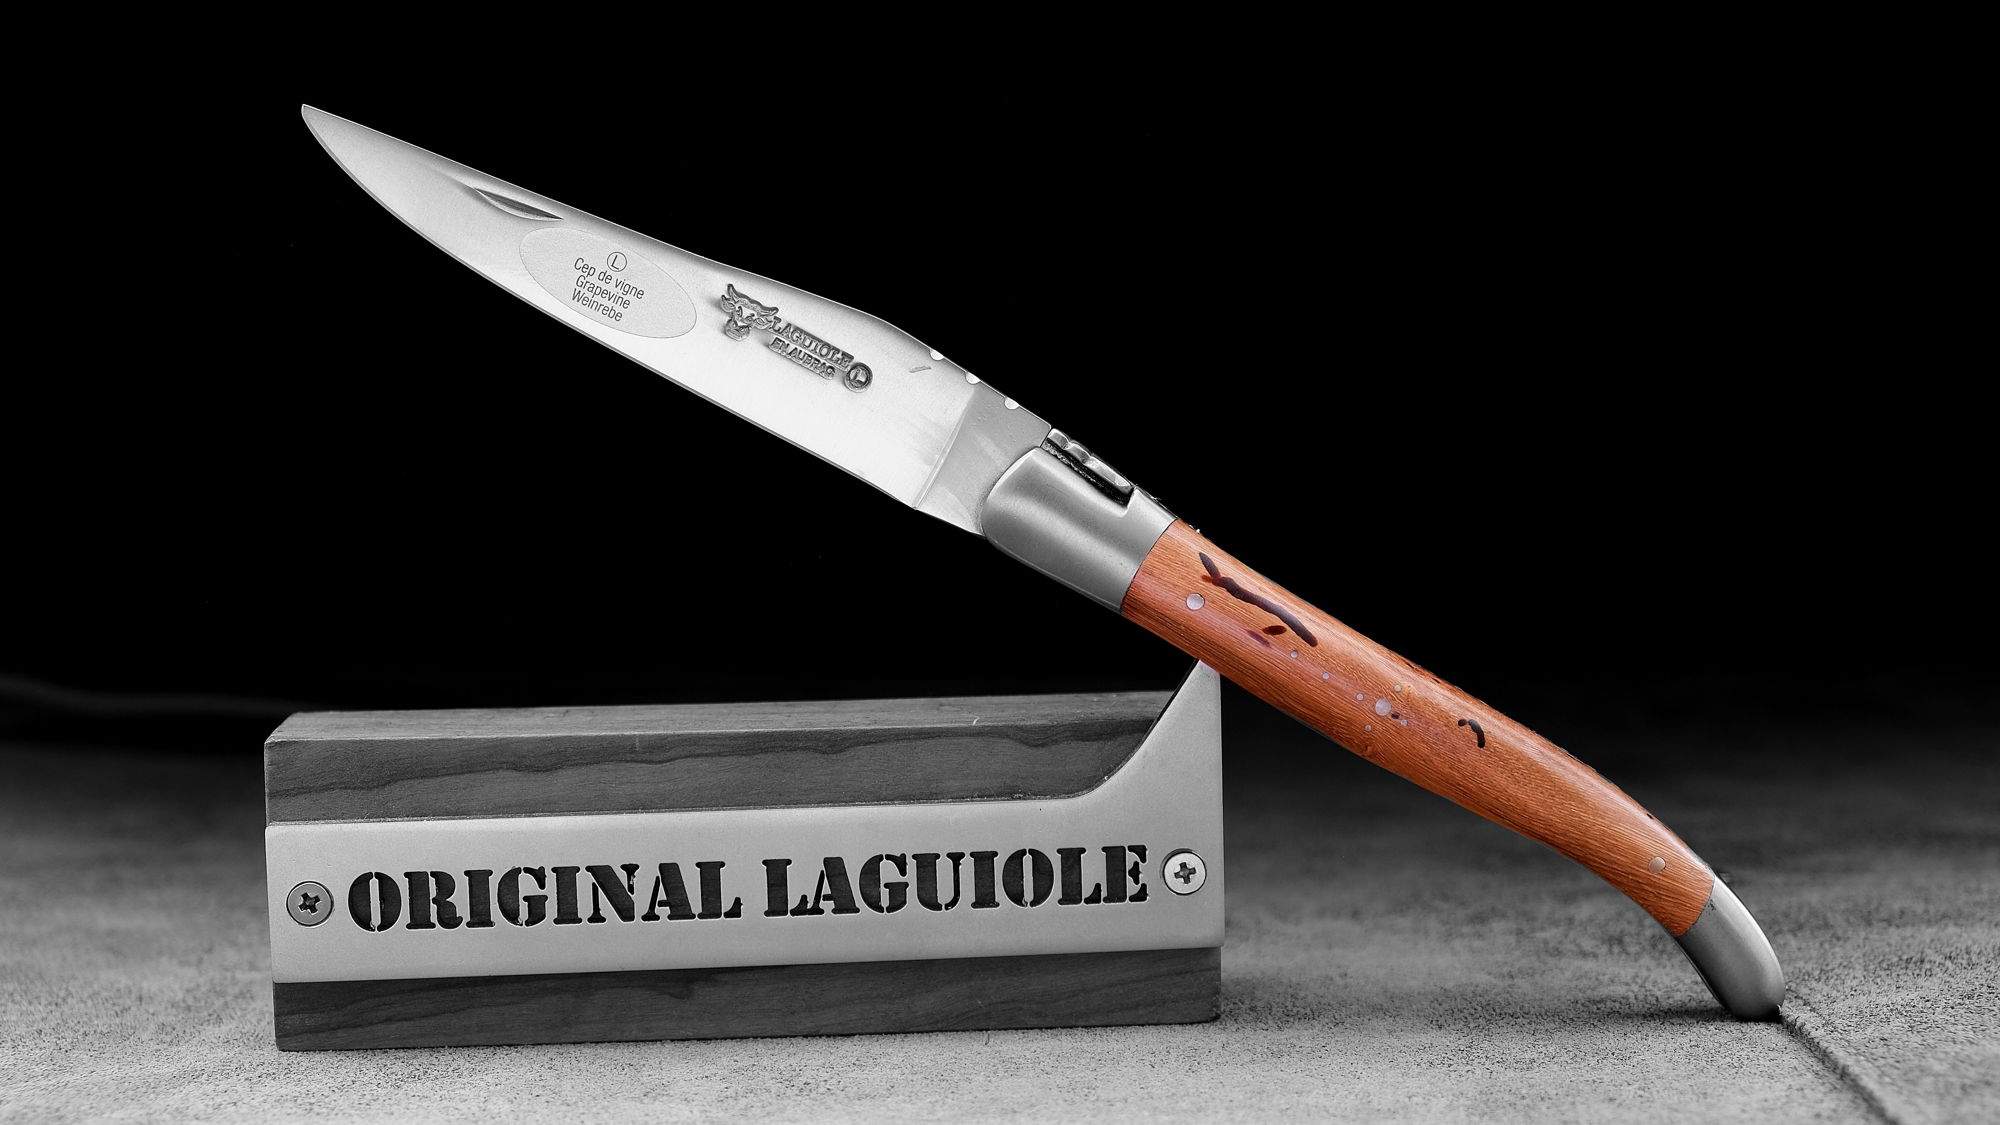 Original laguiole - Taschenmesser Laguiole en Aubrac, Brosse, Rebstock, guillochierte Biene